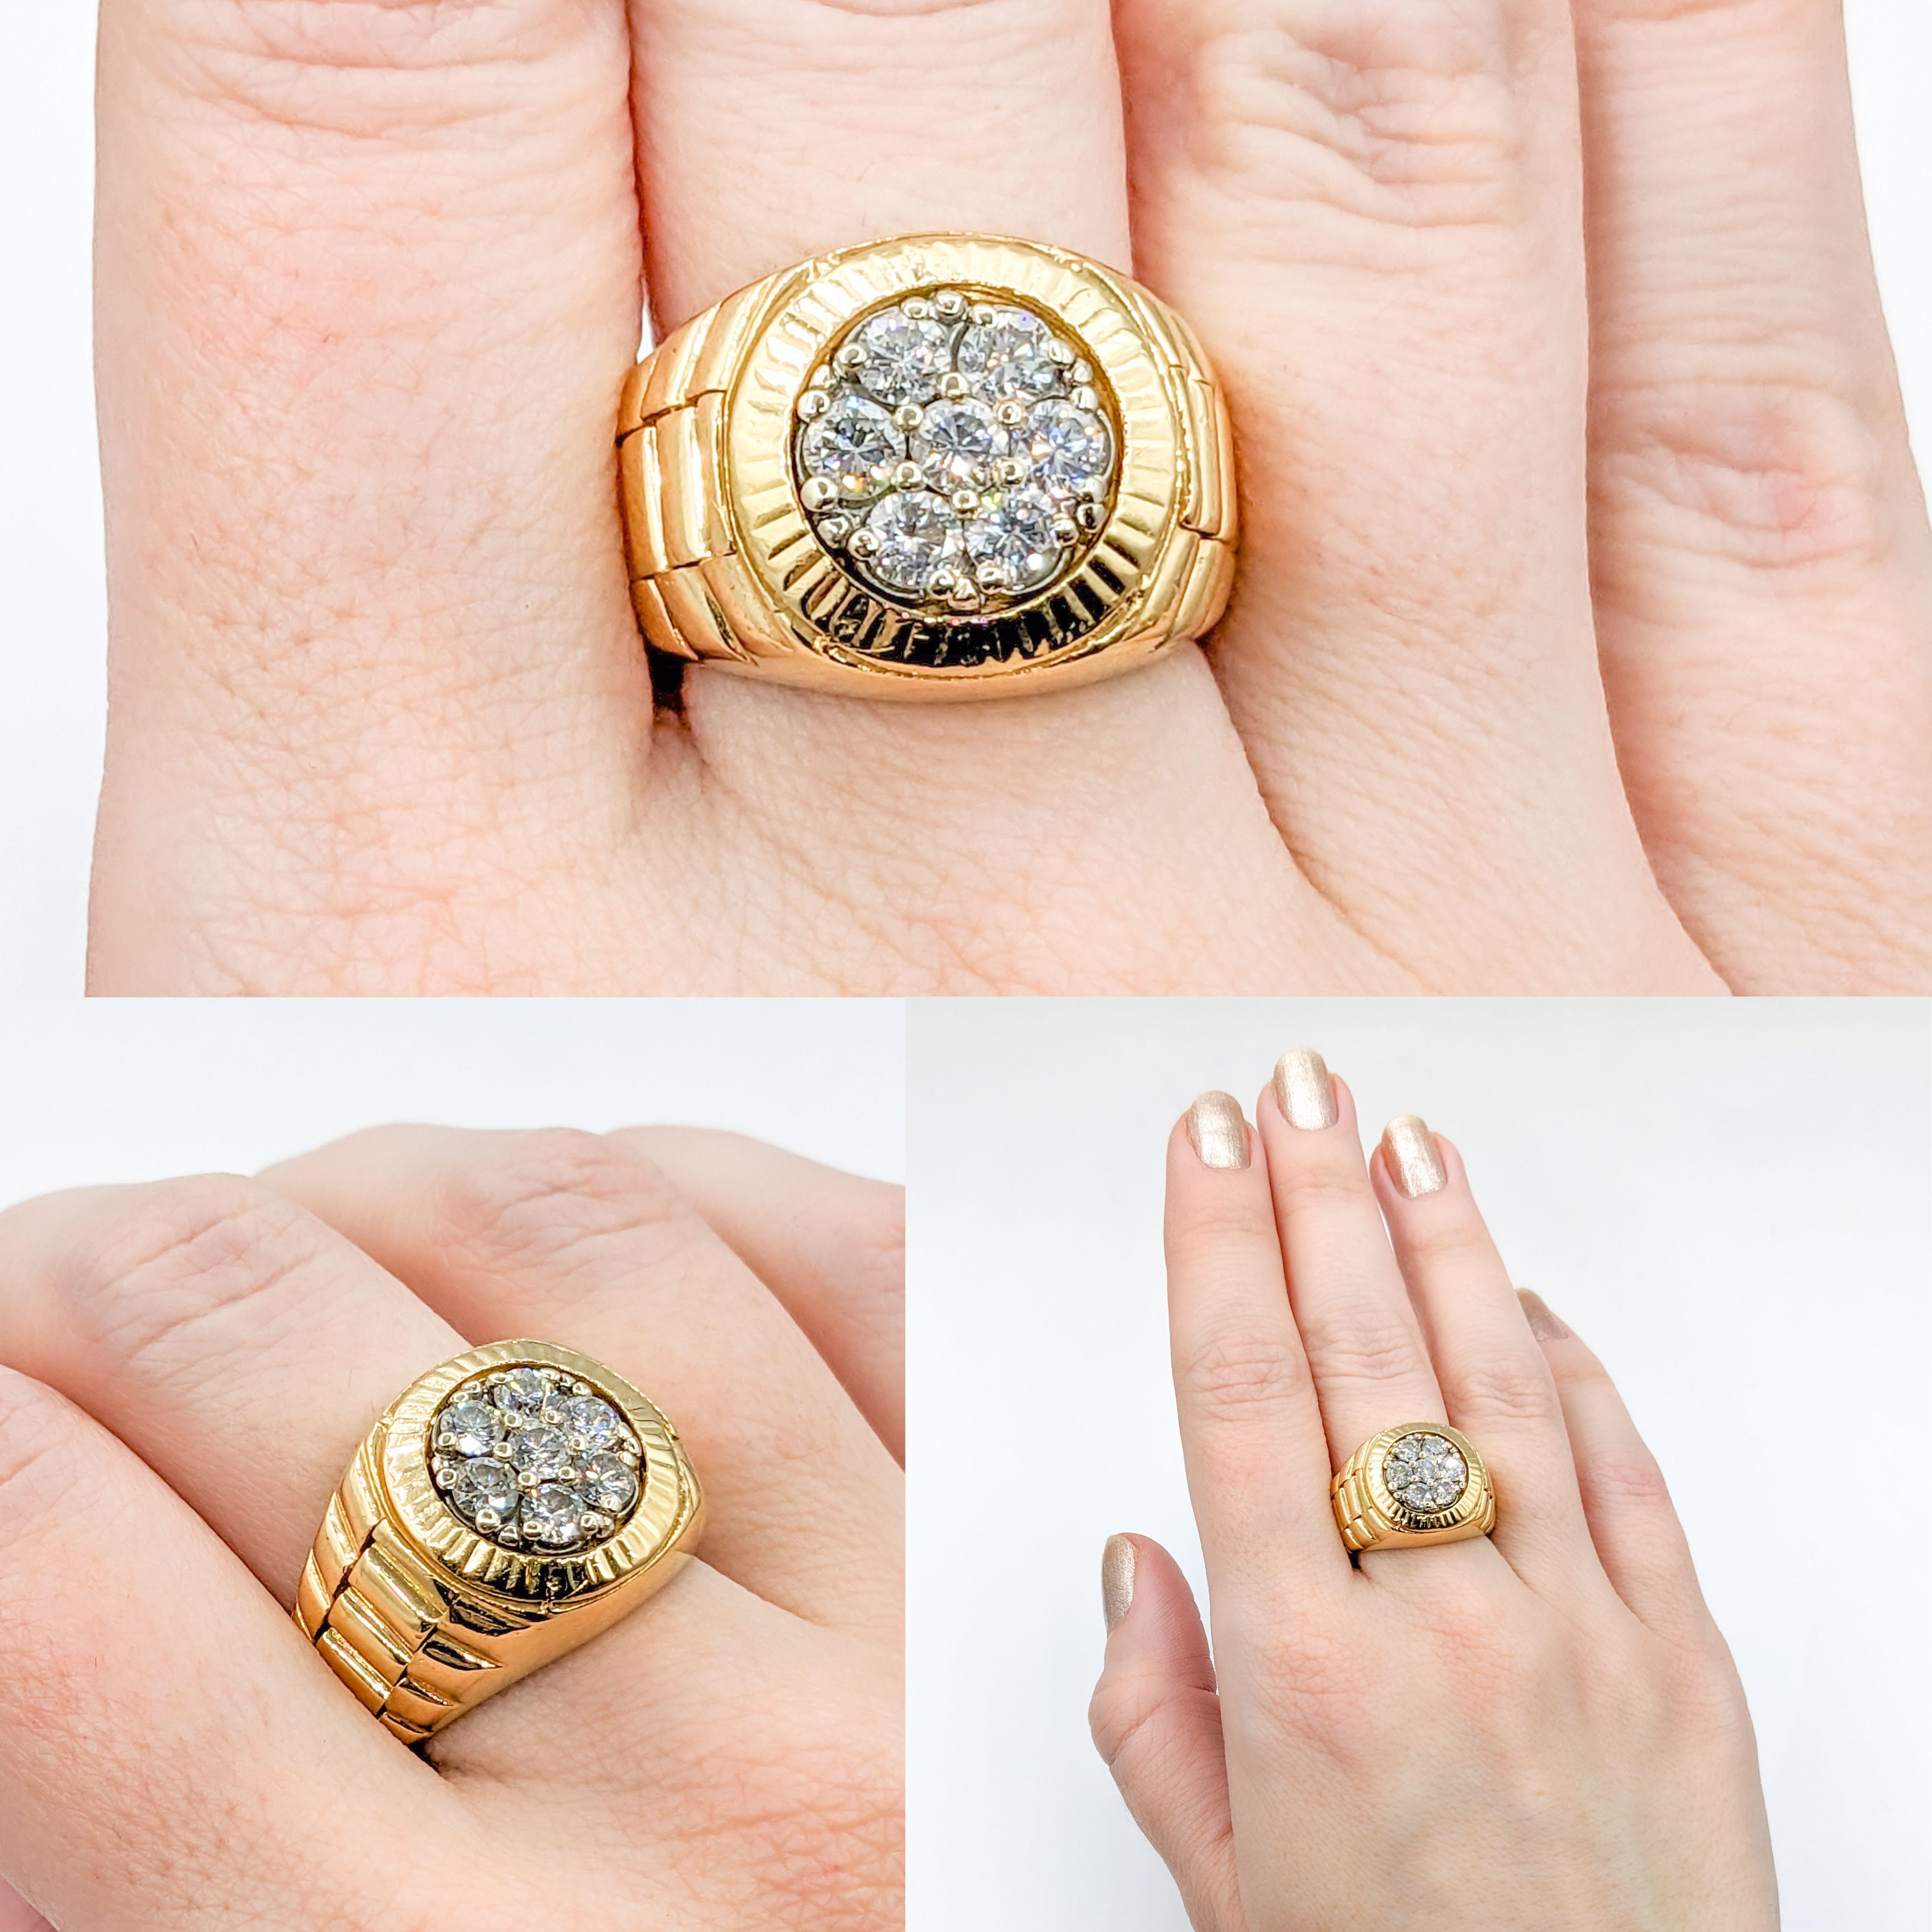 18k .84ctw Cluster Herrenring im Rolex-Stil

Wir stellen unseren exquisiten Ring vor, der meisterhaft aus 18 Karat Gelbgold gefertigt und mit dem unverwechselbaren 